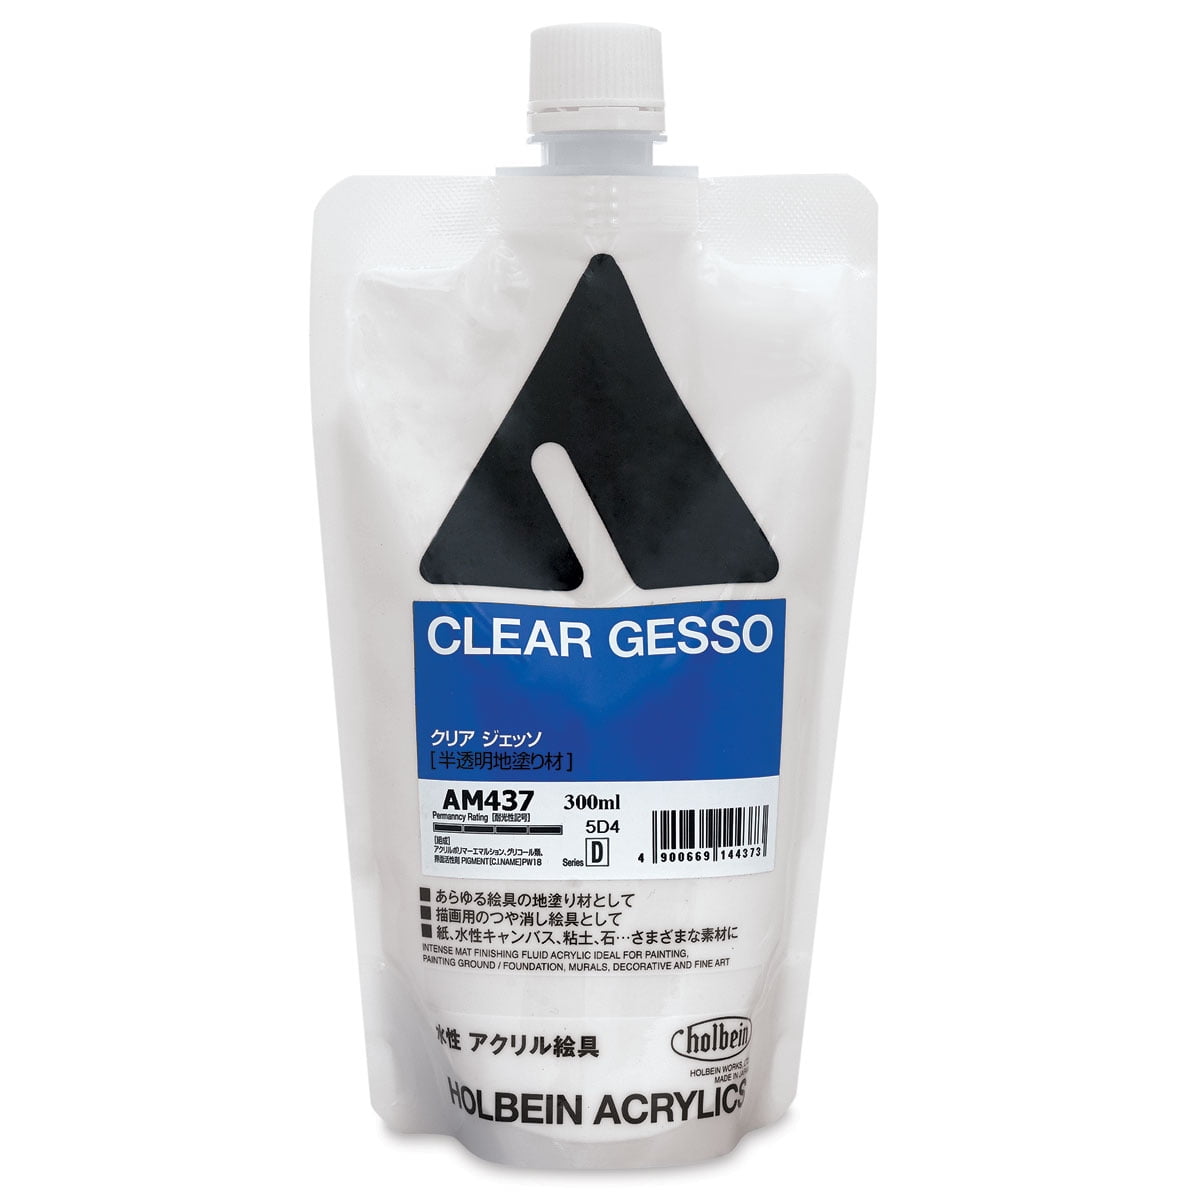  US Art Supply Clear Gesso Acrylic Medium, 480ml